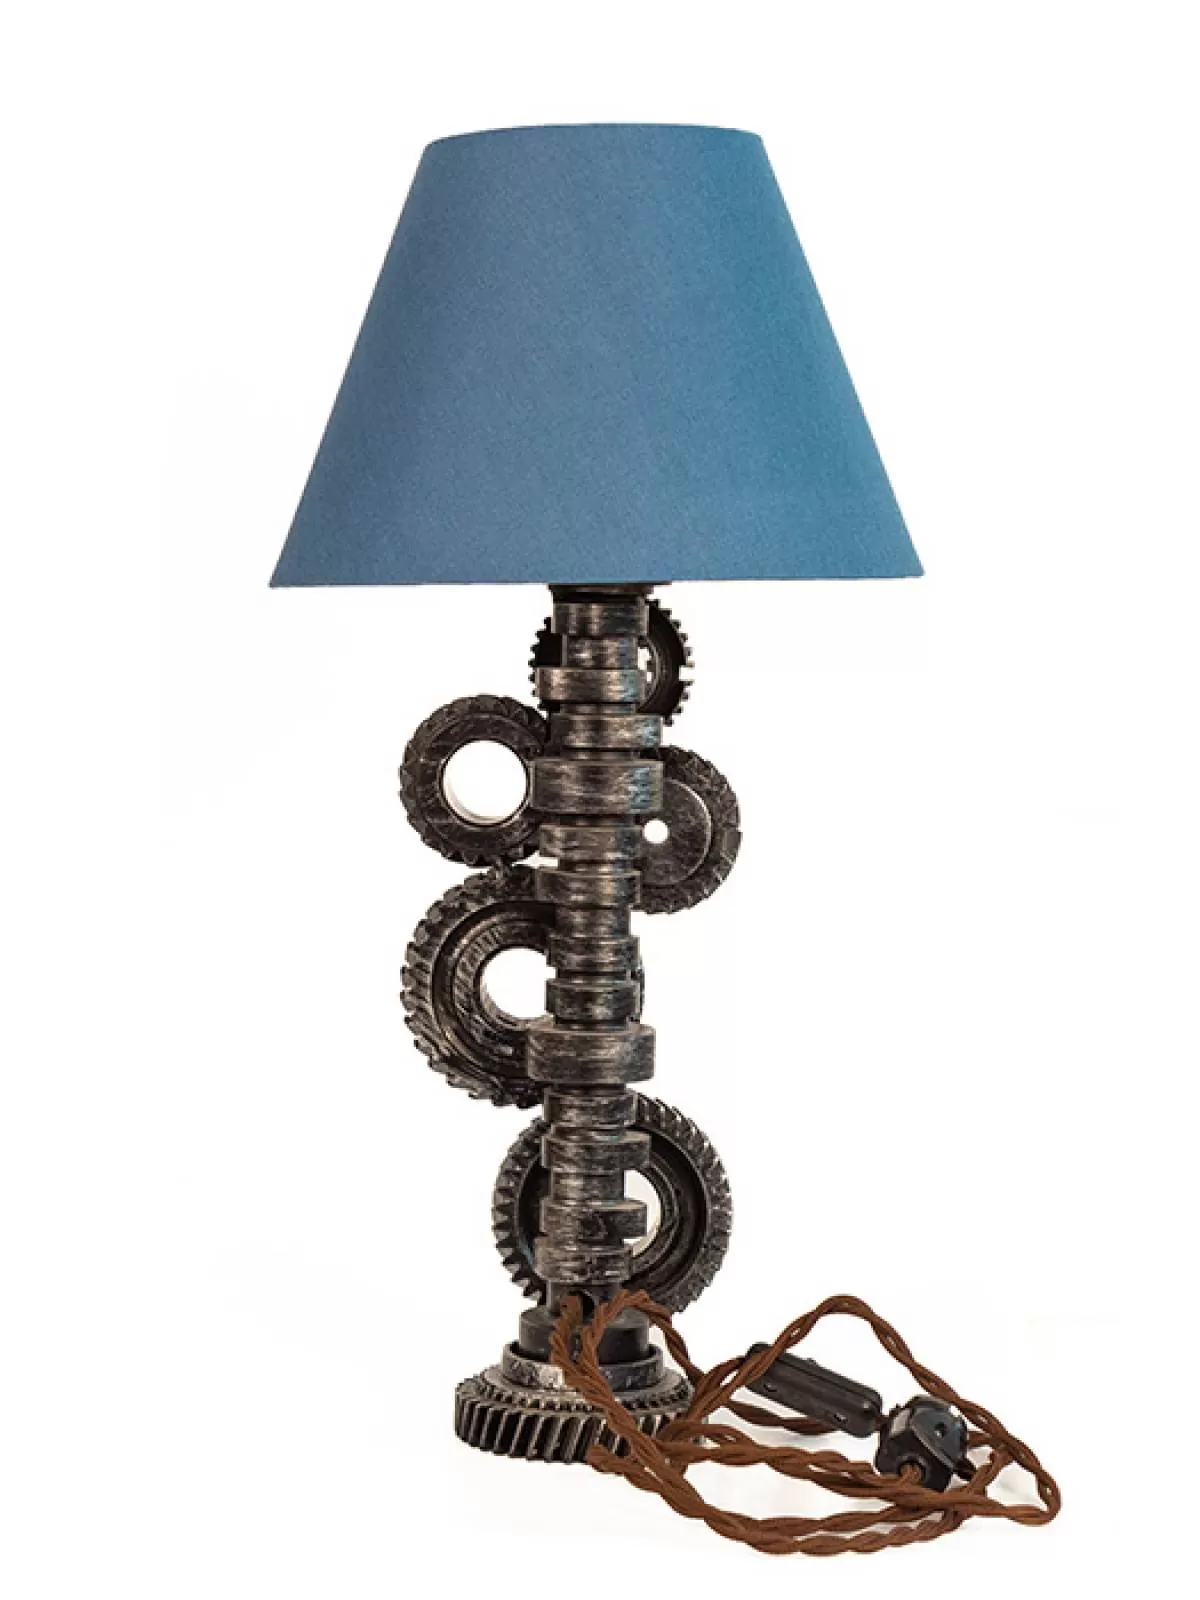 Светильник «Шестерни» с синим абажуром. Фотография 3